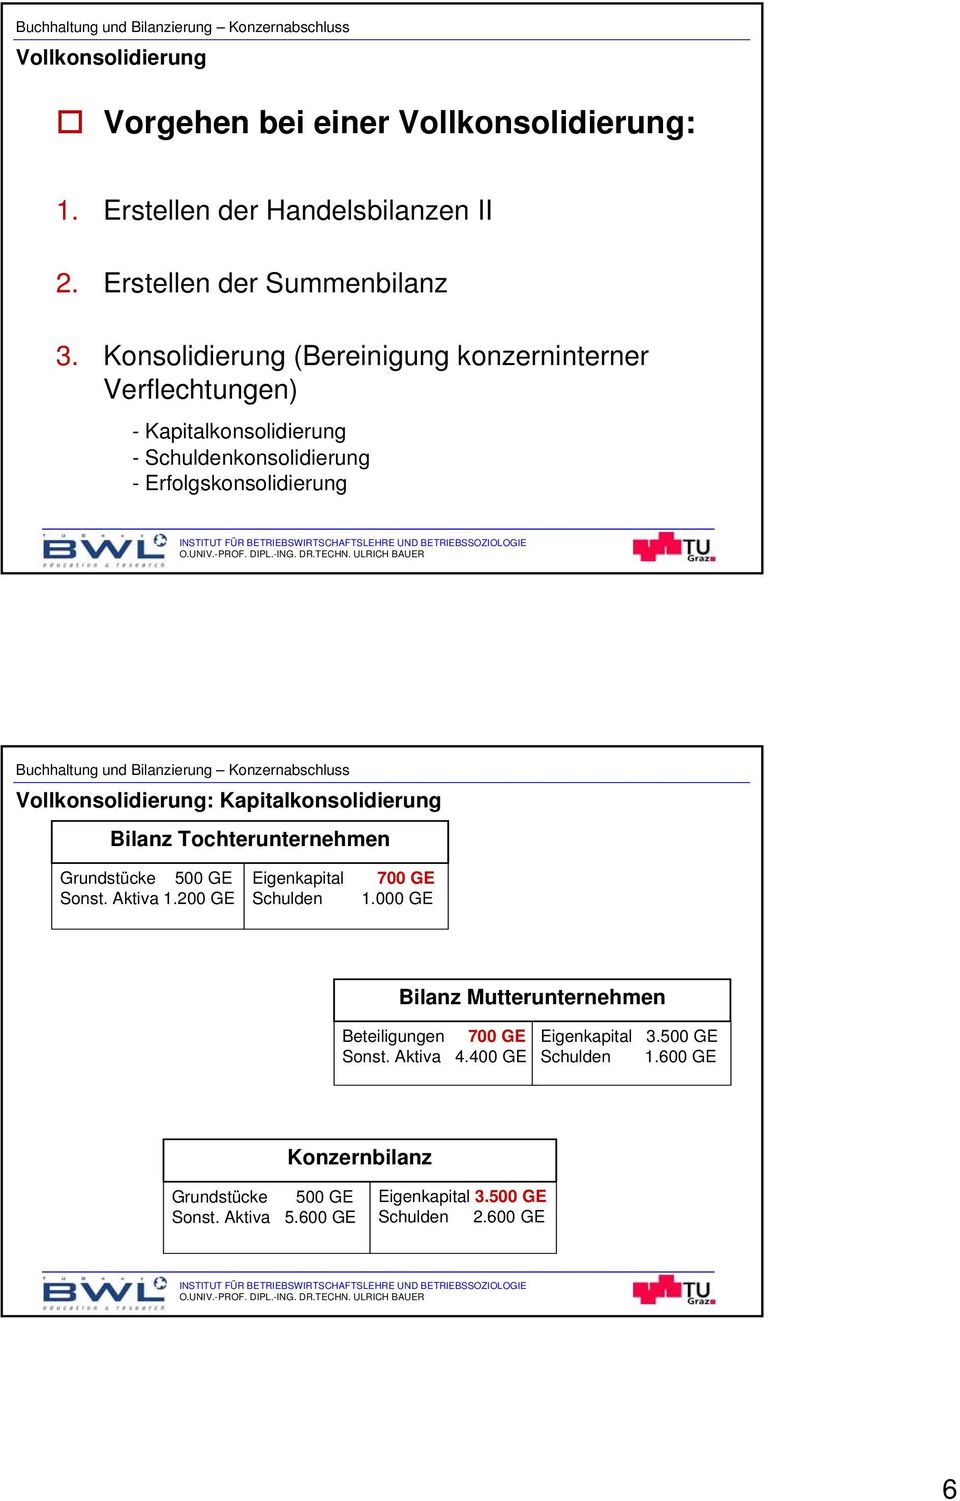 Kapitalkonsolidierung Bilanz Tochterunternehmen Grundstücke 500 GE Sonst. Aktiva 1.200 GE Eigenkapital Schulden 700 GE 1.